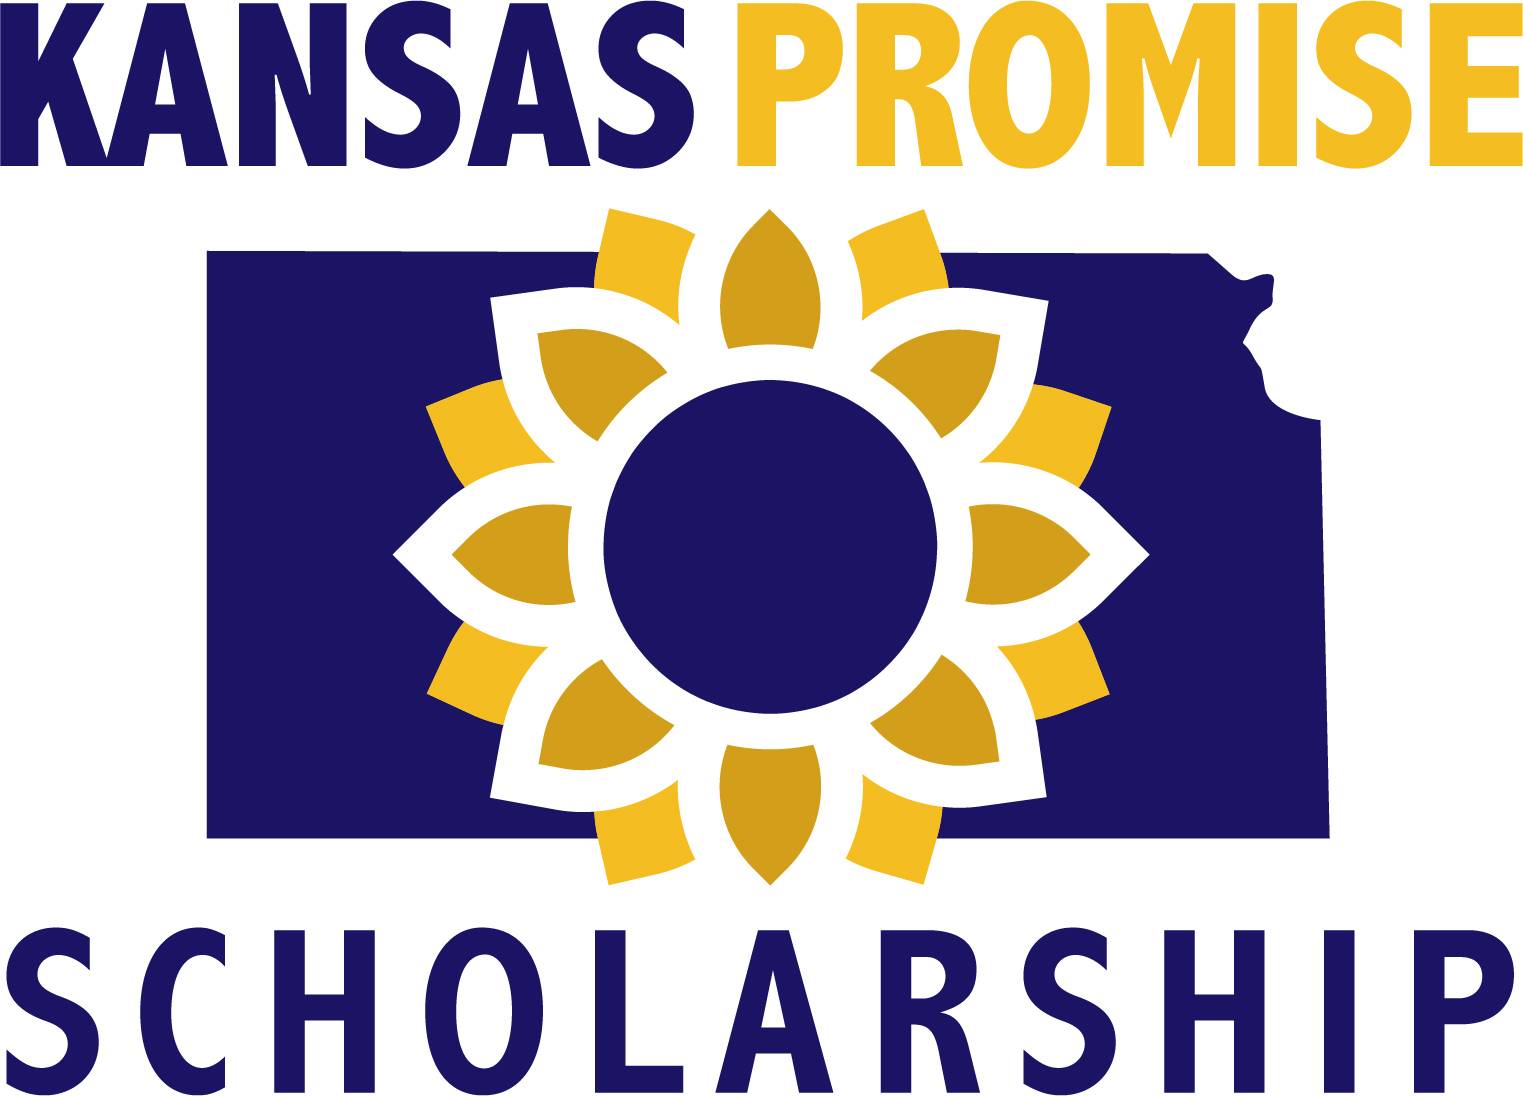 Kansas Promise Act logo